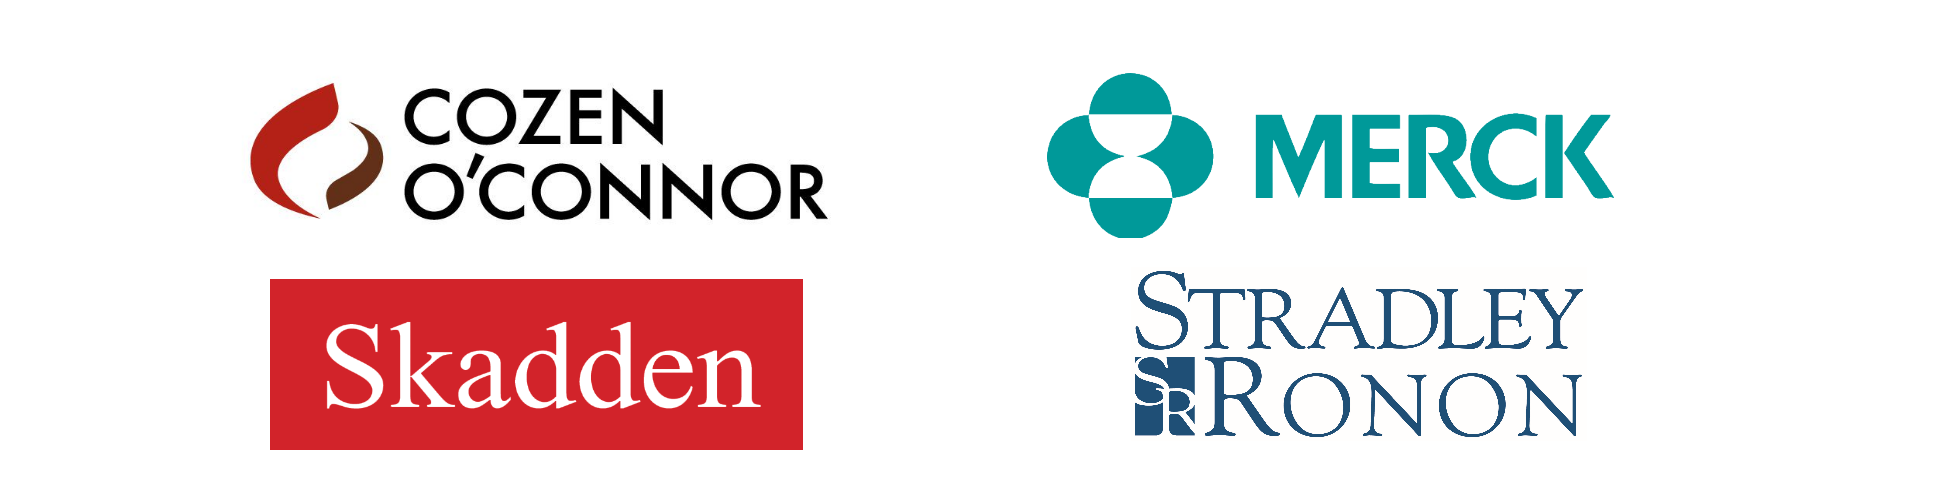 Reformer sponsor logos